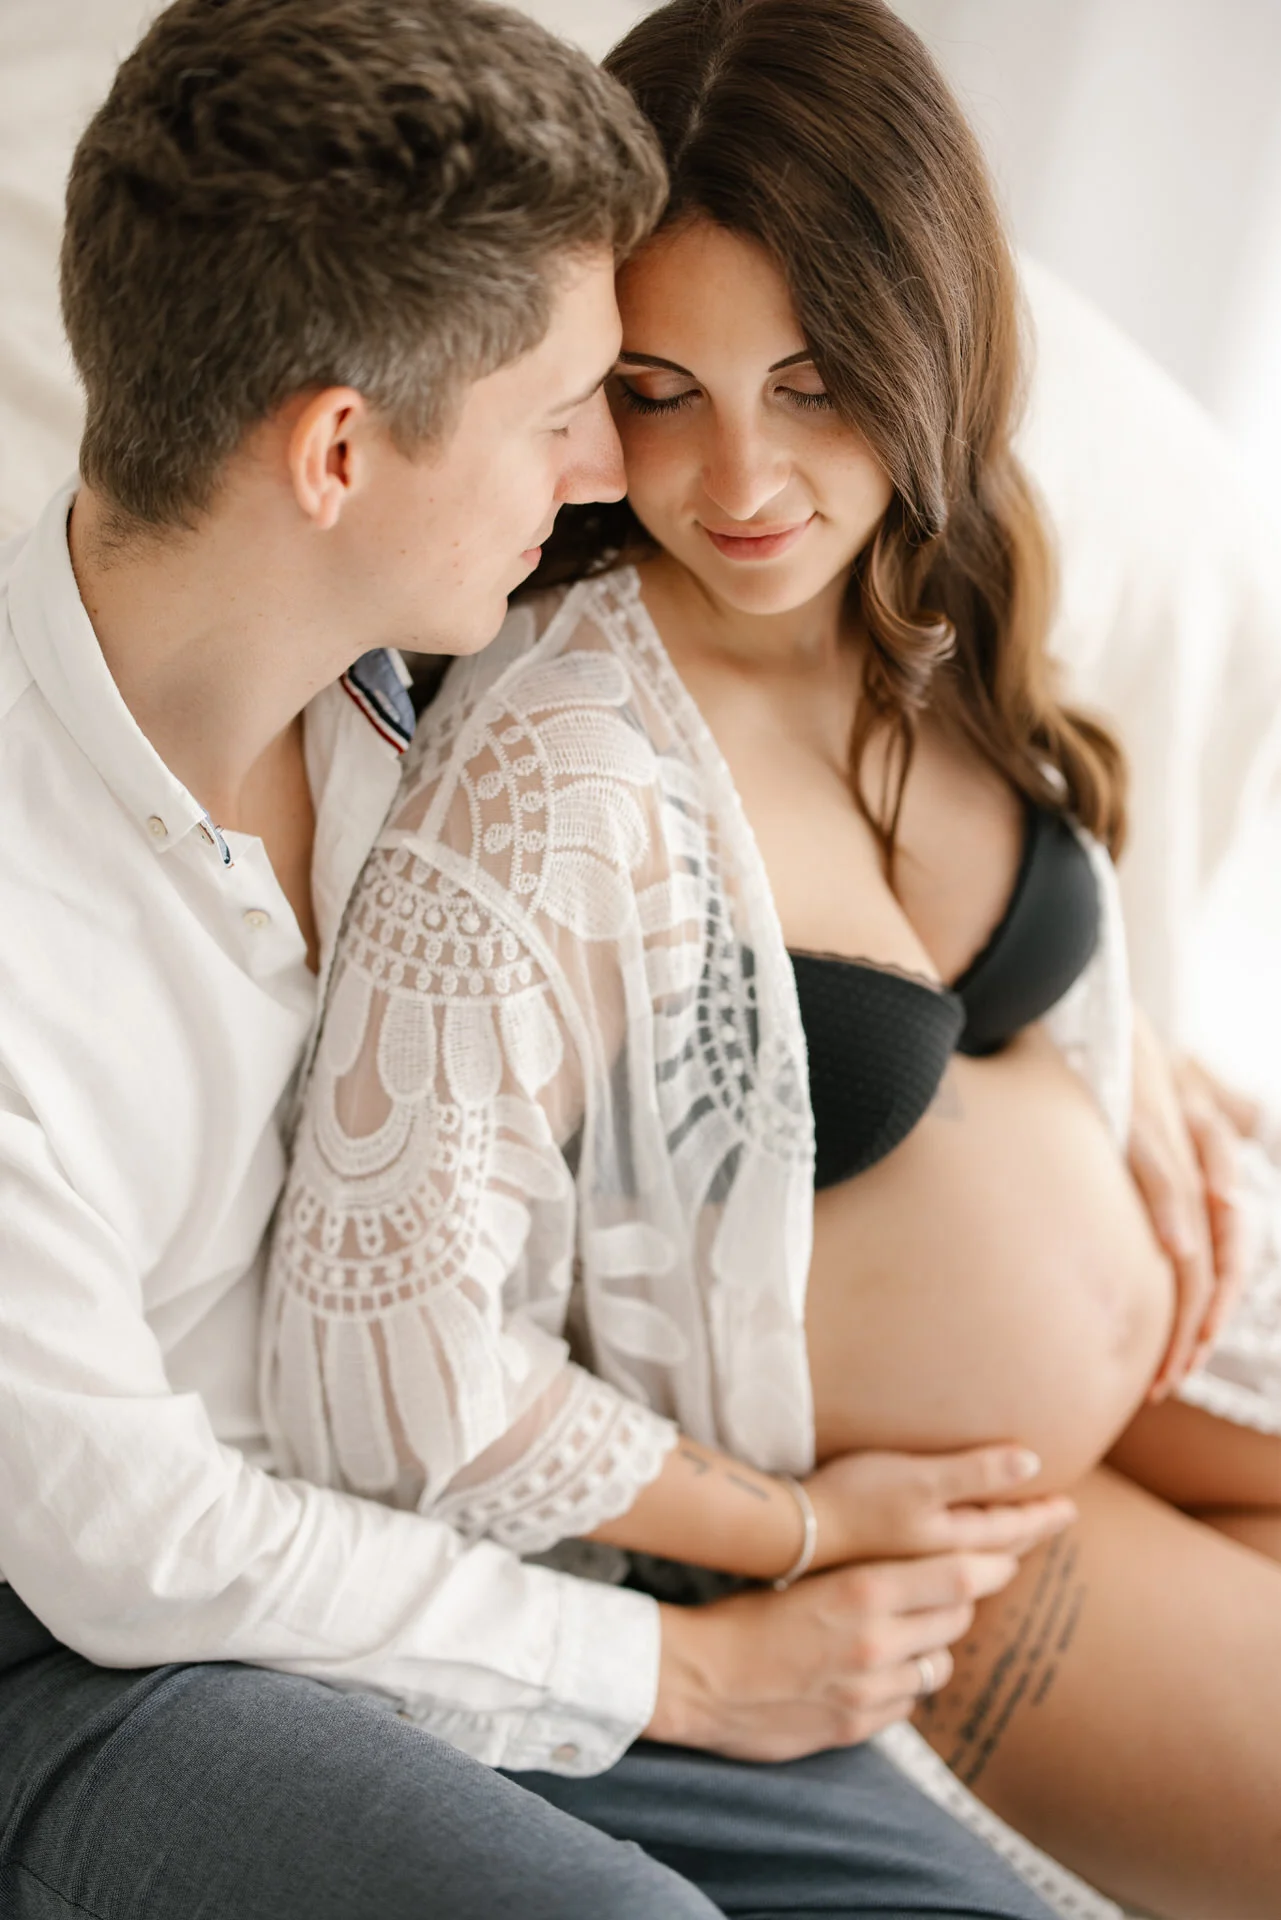 schwangerschaftsshooting babybauch fotograf leipzig fotostudio halle julia oehme